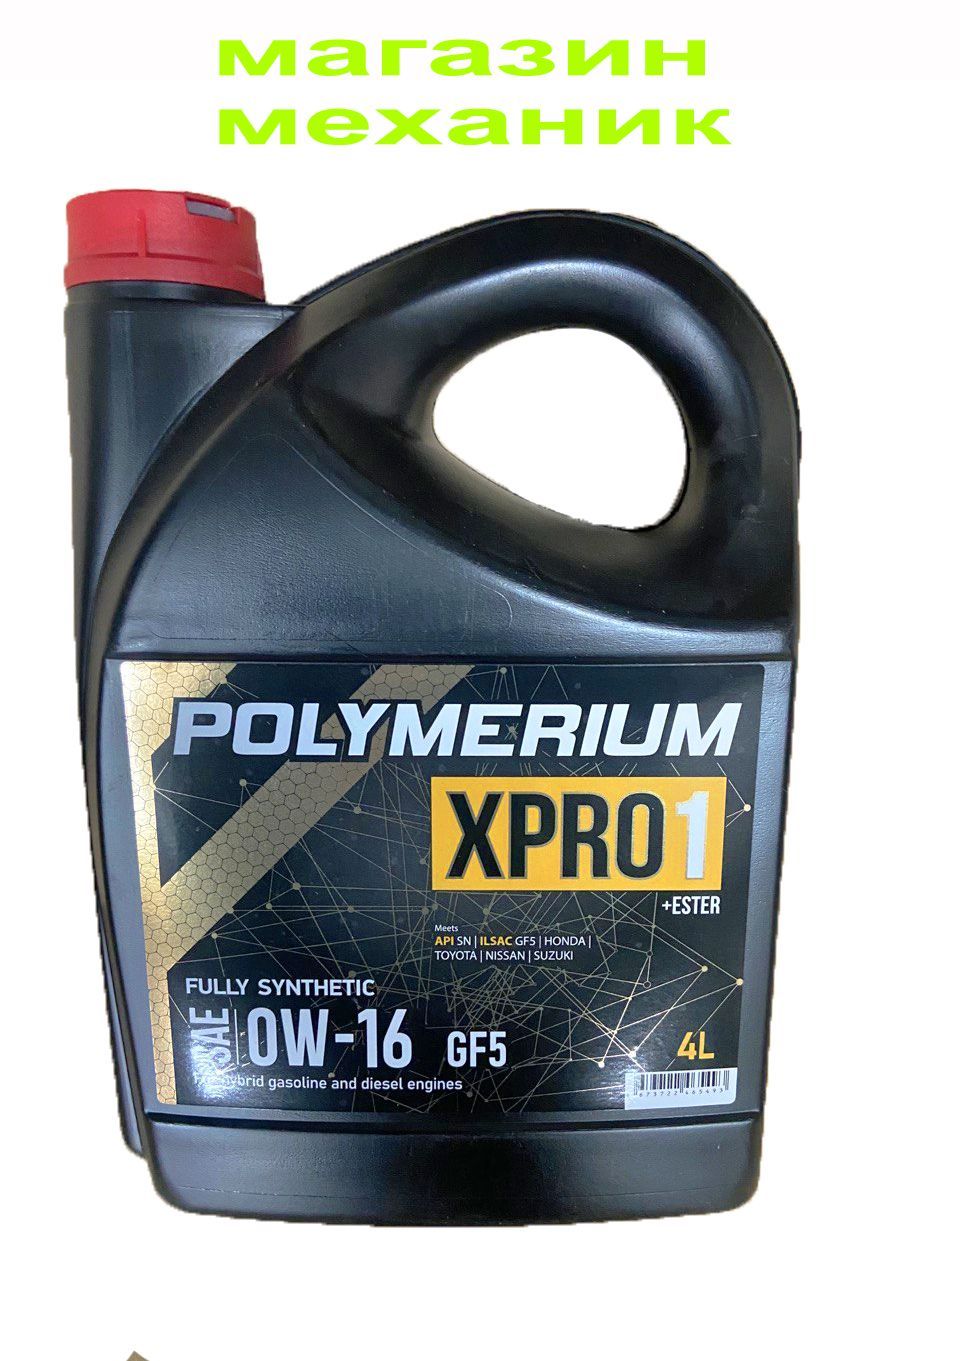 Масло полимериум. Polymerium xpro2 5w-20 gf5 SN. Масло полимериум отзывы.